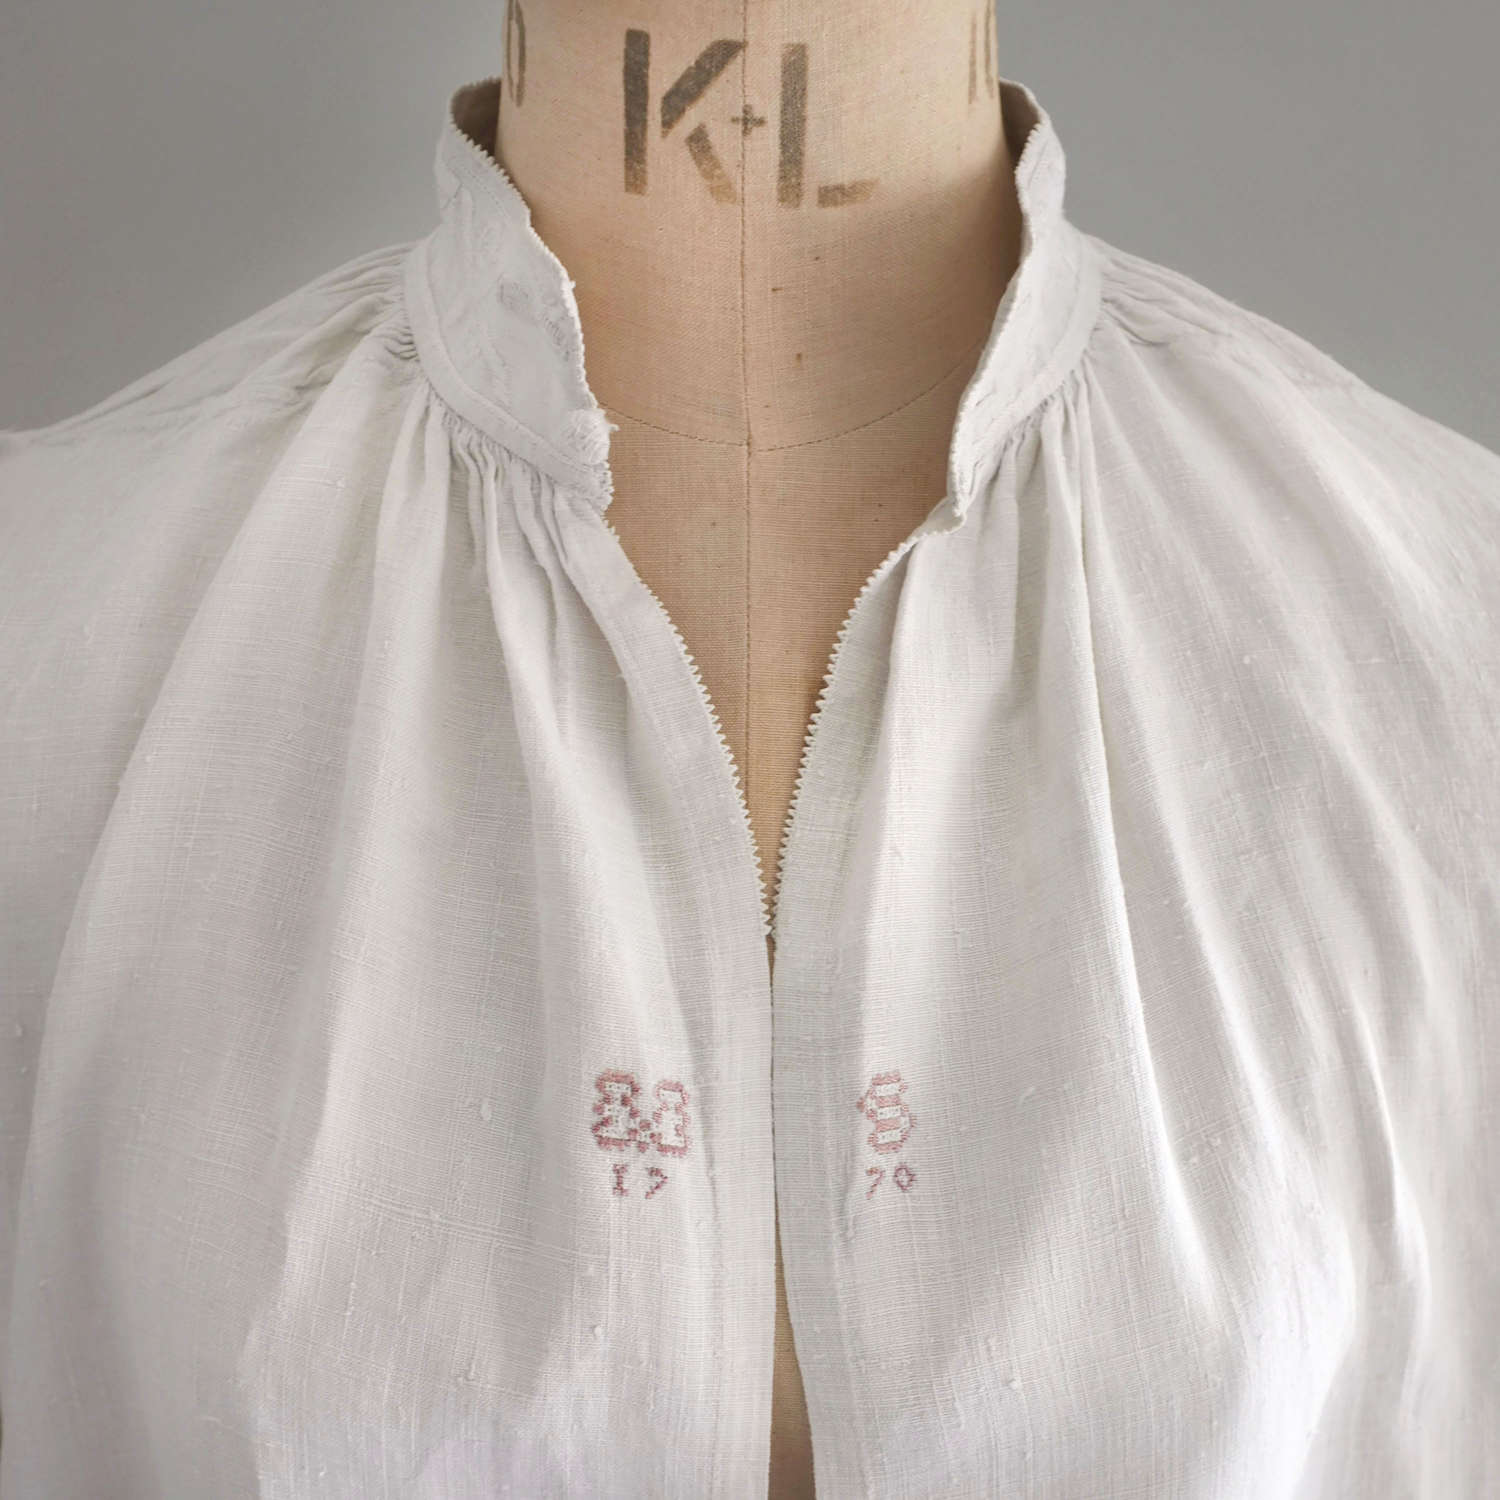 Antique 18th Century Man's Linen Nightshirt